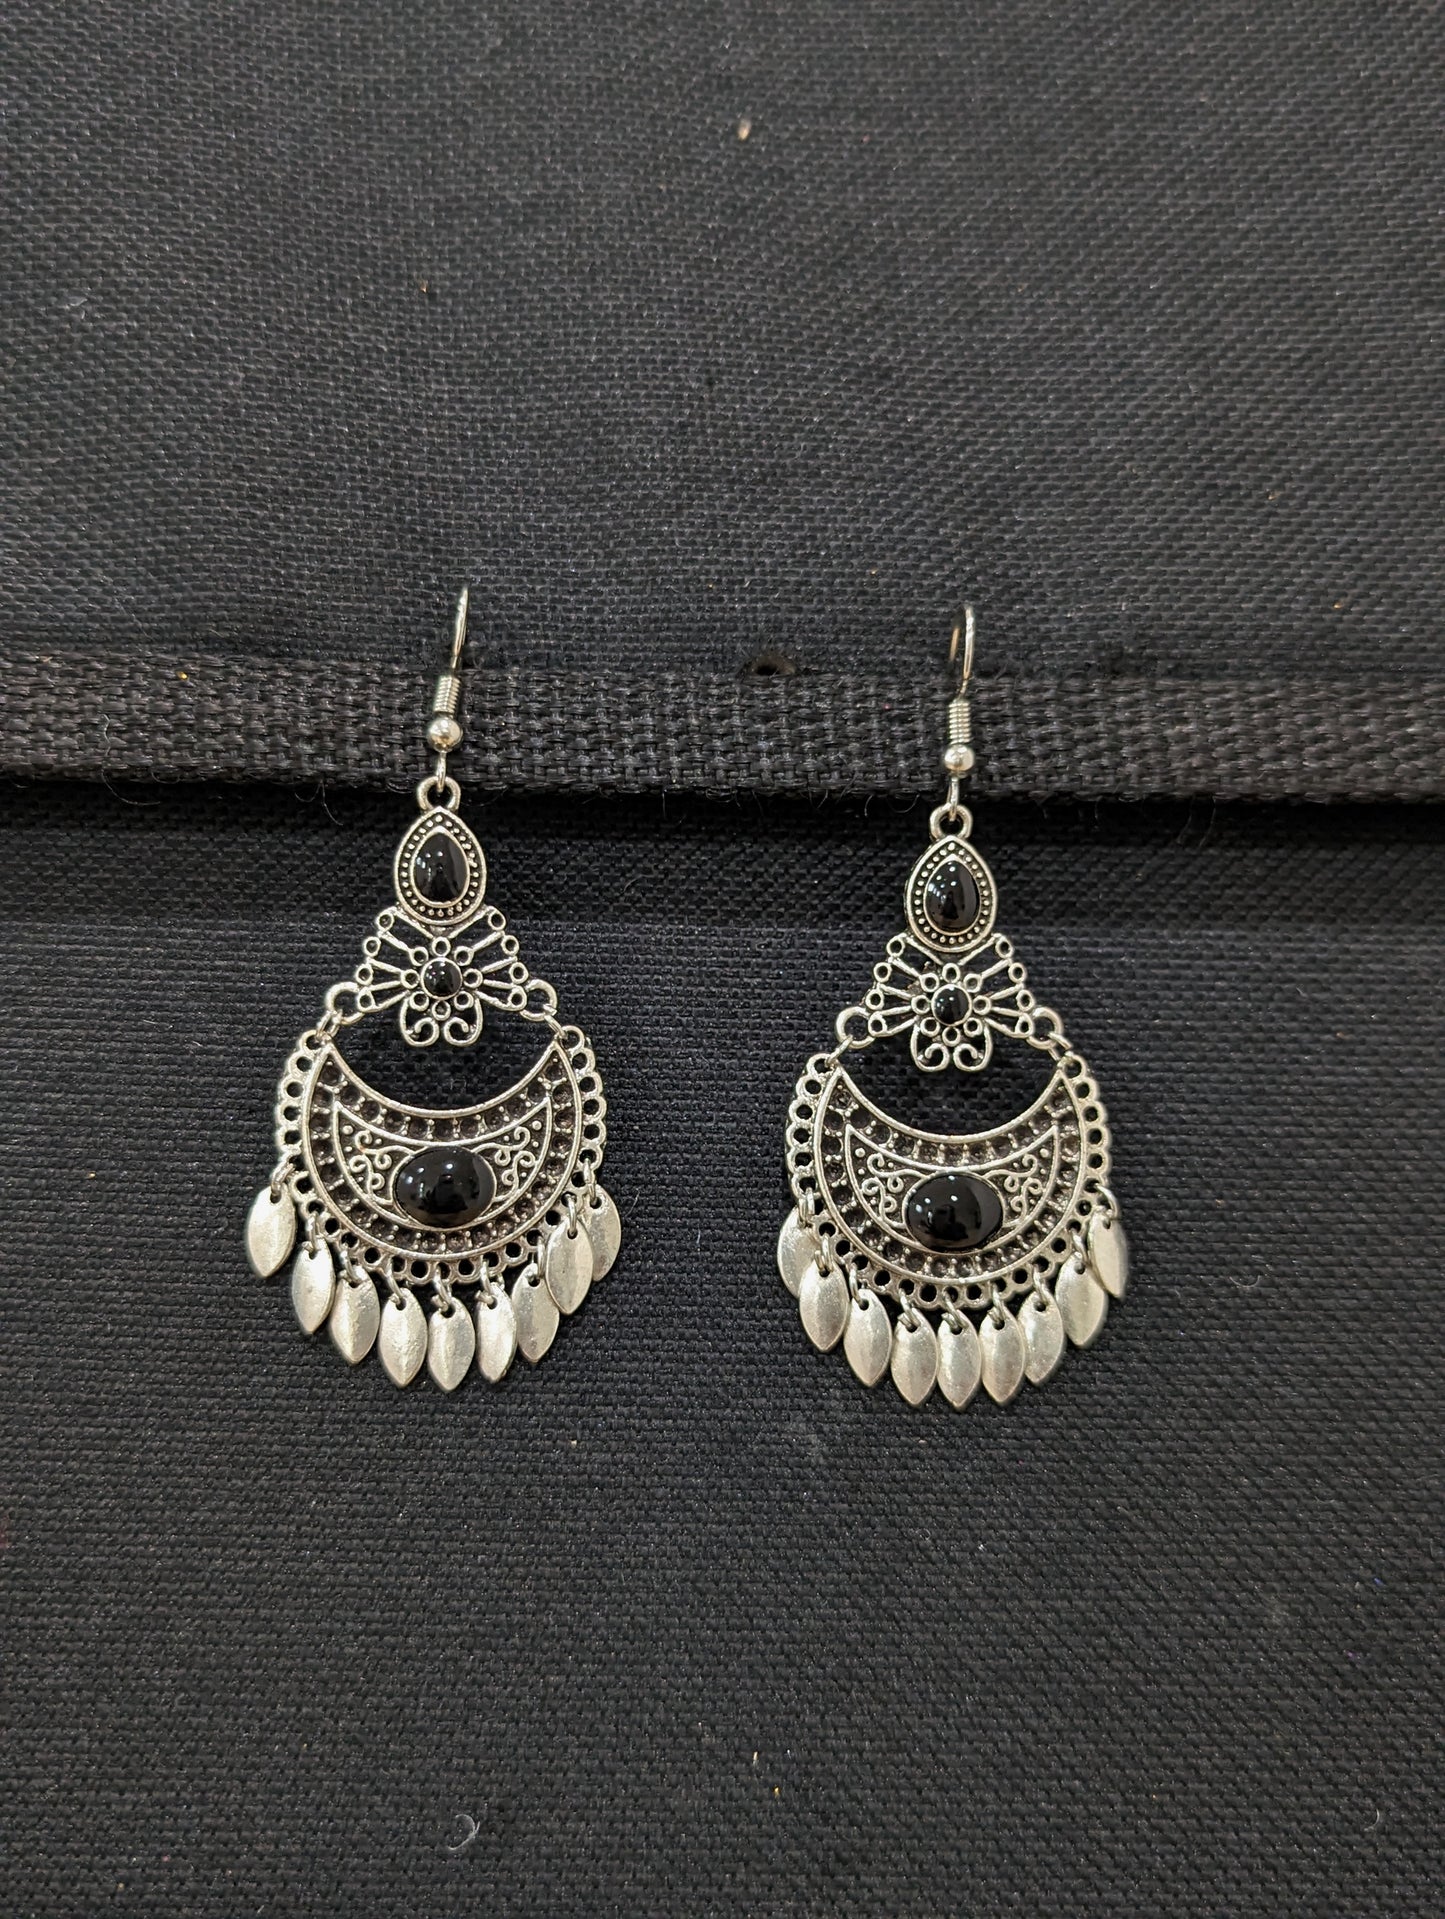 Antique silver enamel hook drop Earrings - 4 designs - Simpliful